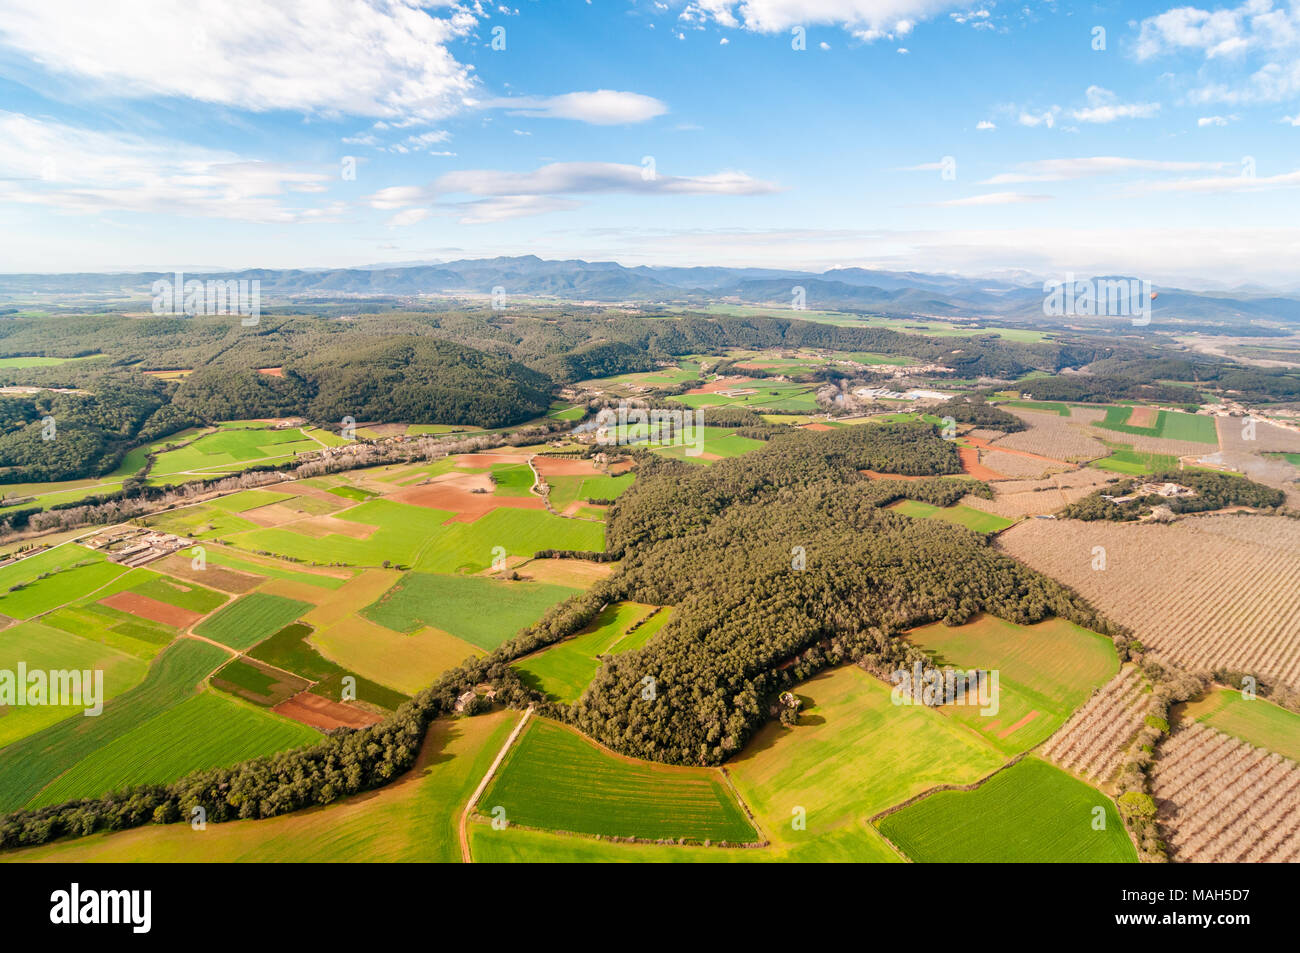 Vista aerea di campi di raccolto con tubicini di foresta, alcune noci sulla destra, Garrotxa, Catalogna, Spagna Foto Stock